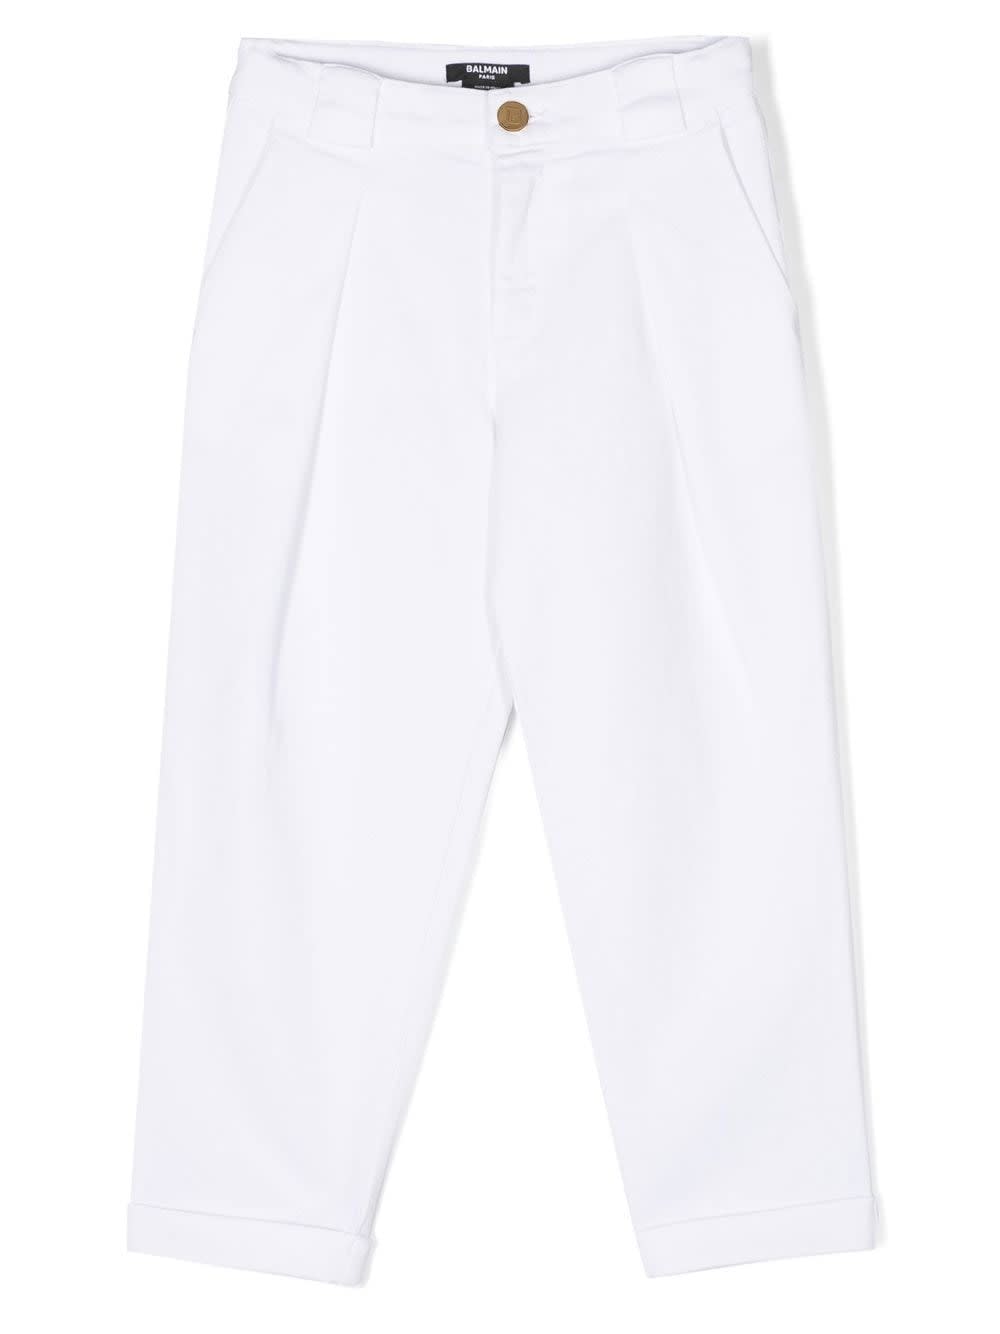 Shop Balmain White Cotton Pants